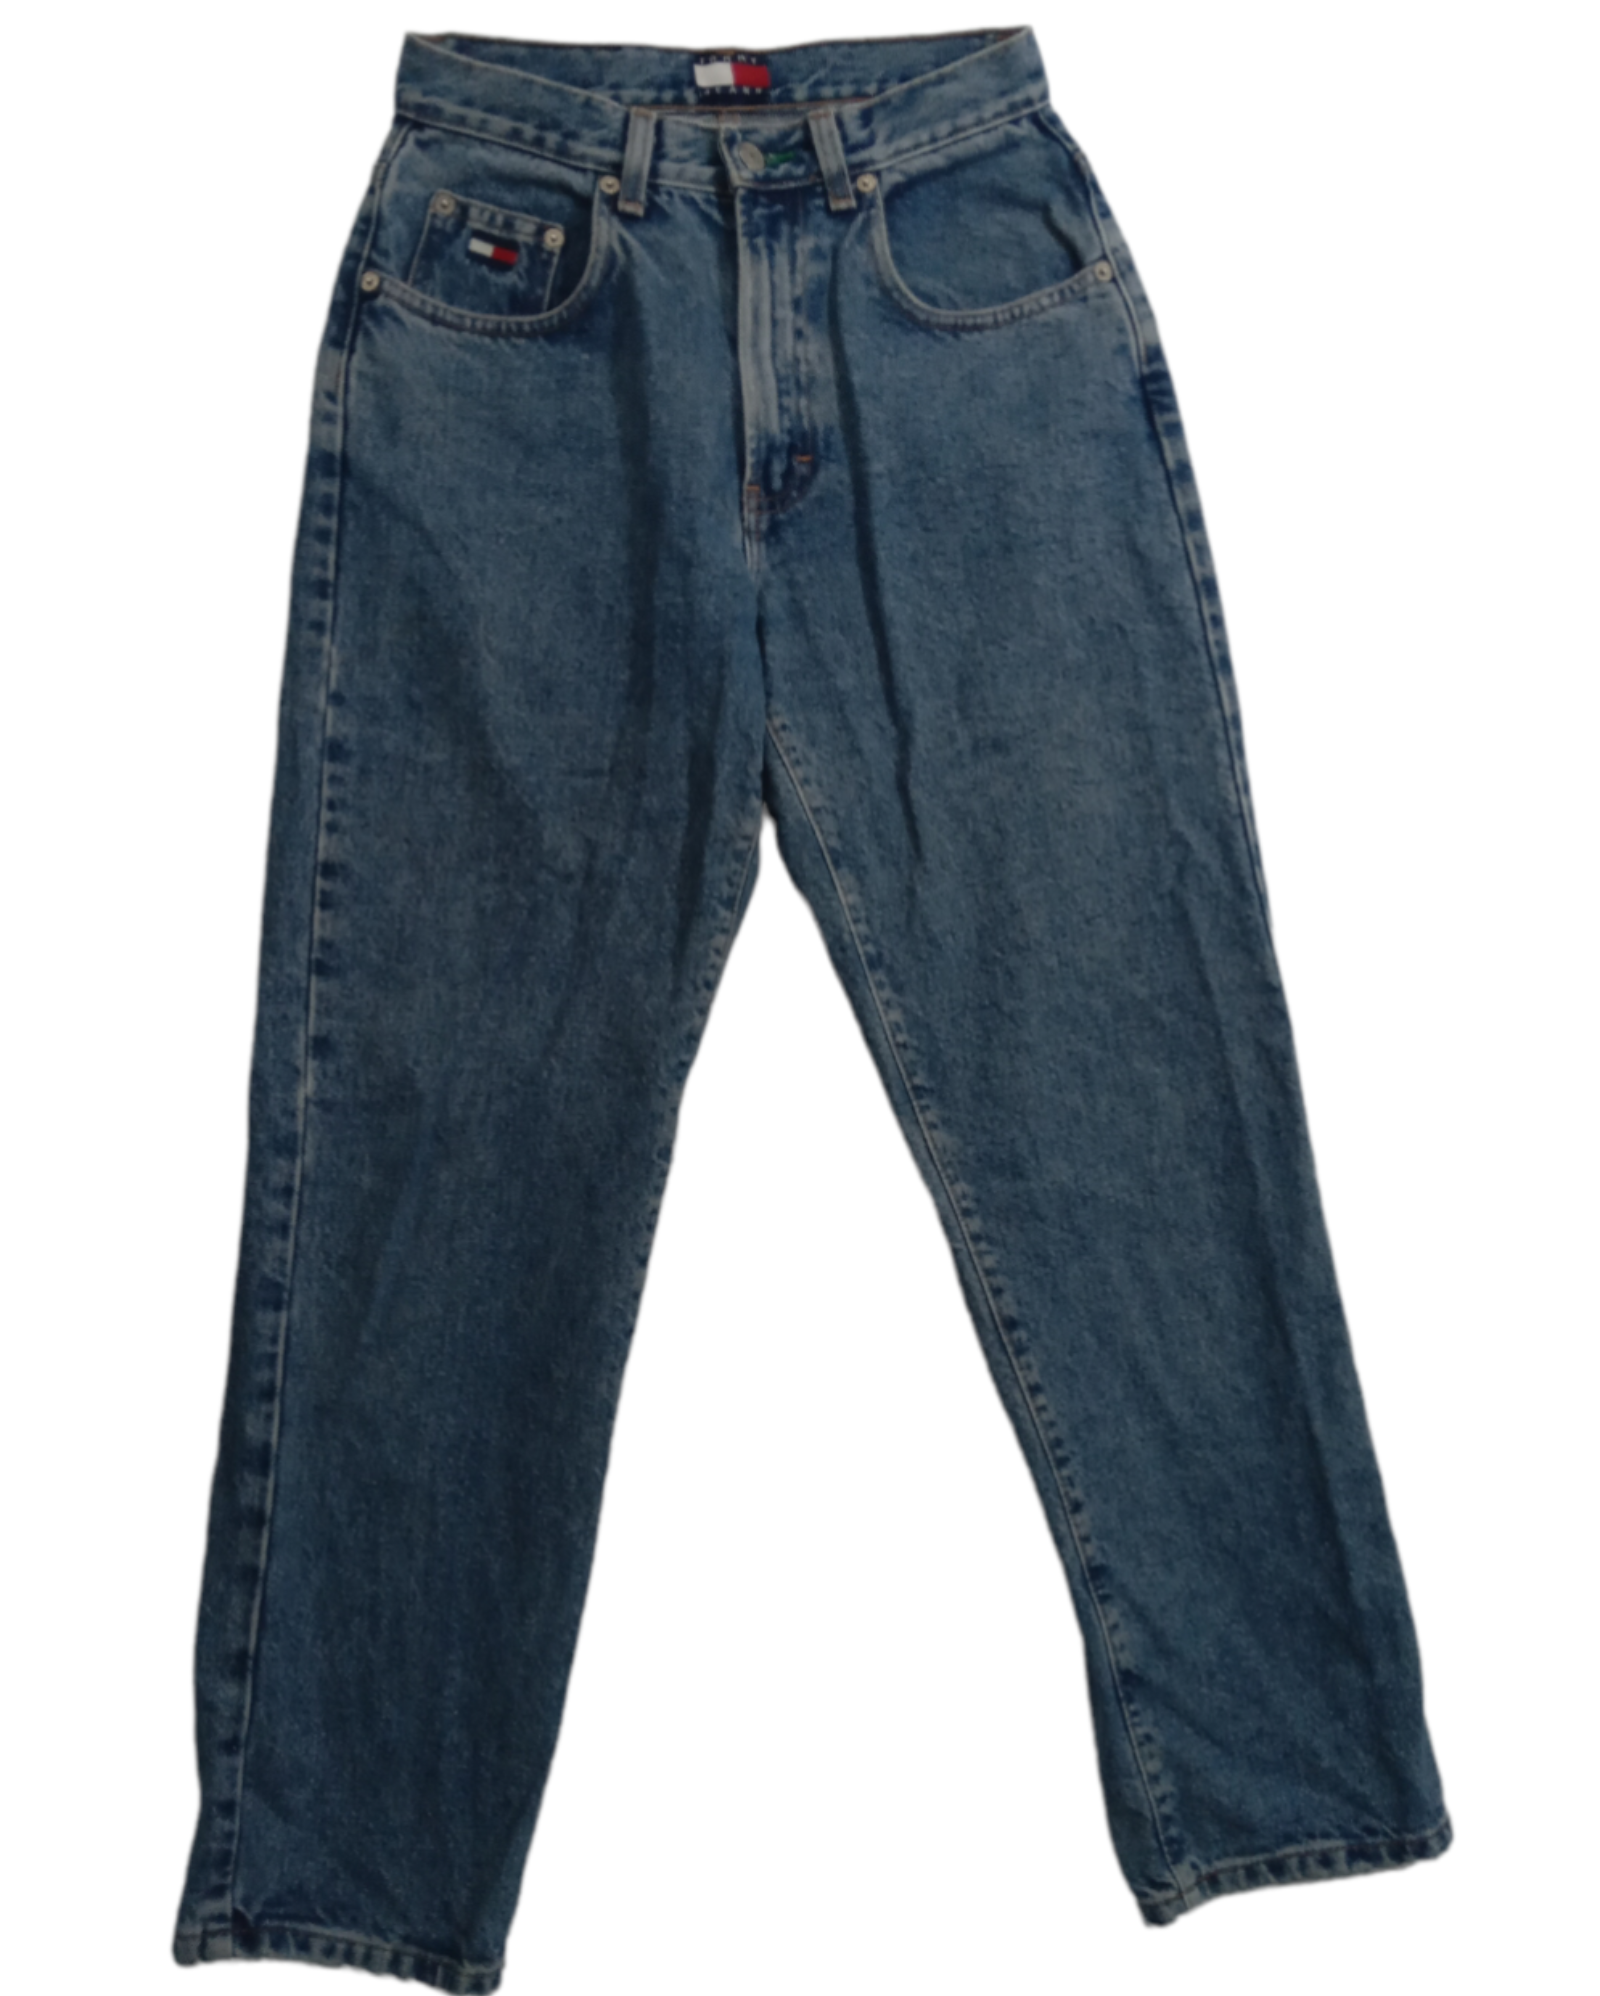 Jeans Rectos 1